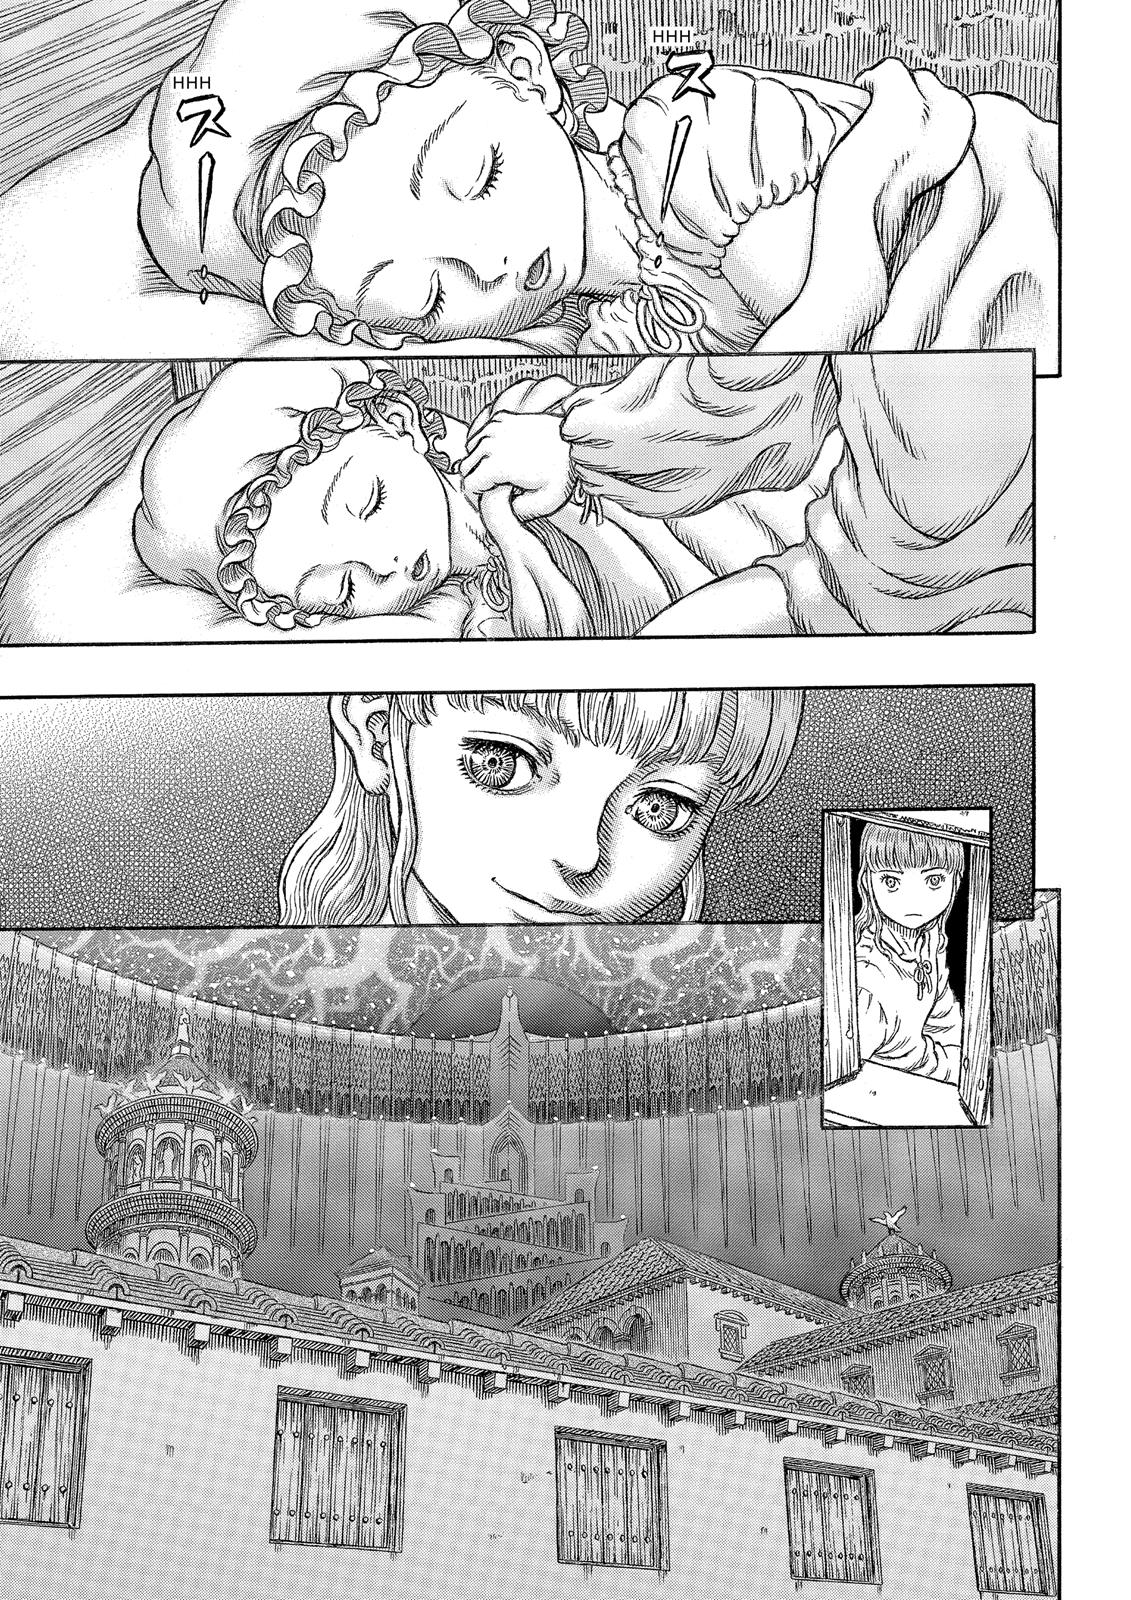 Berserk Manga Chapter 334 image 28